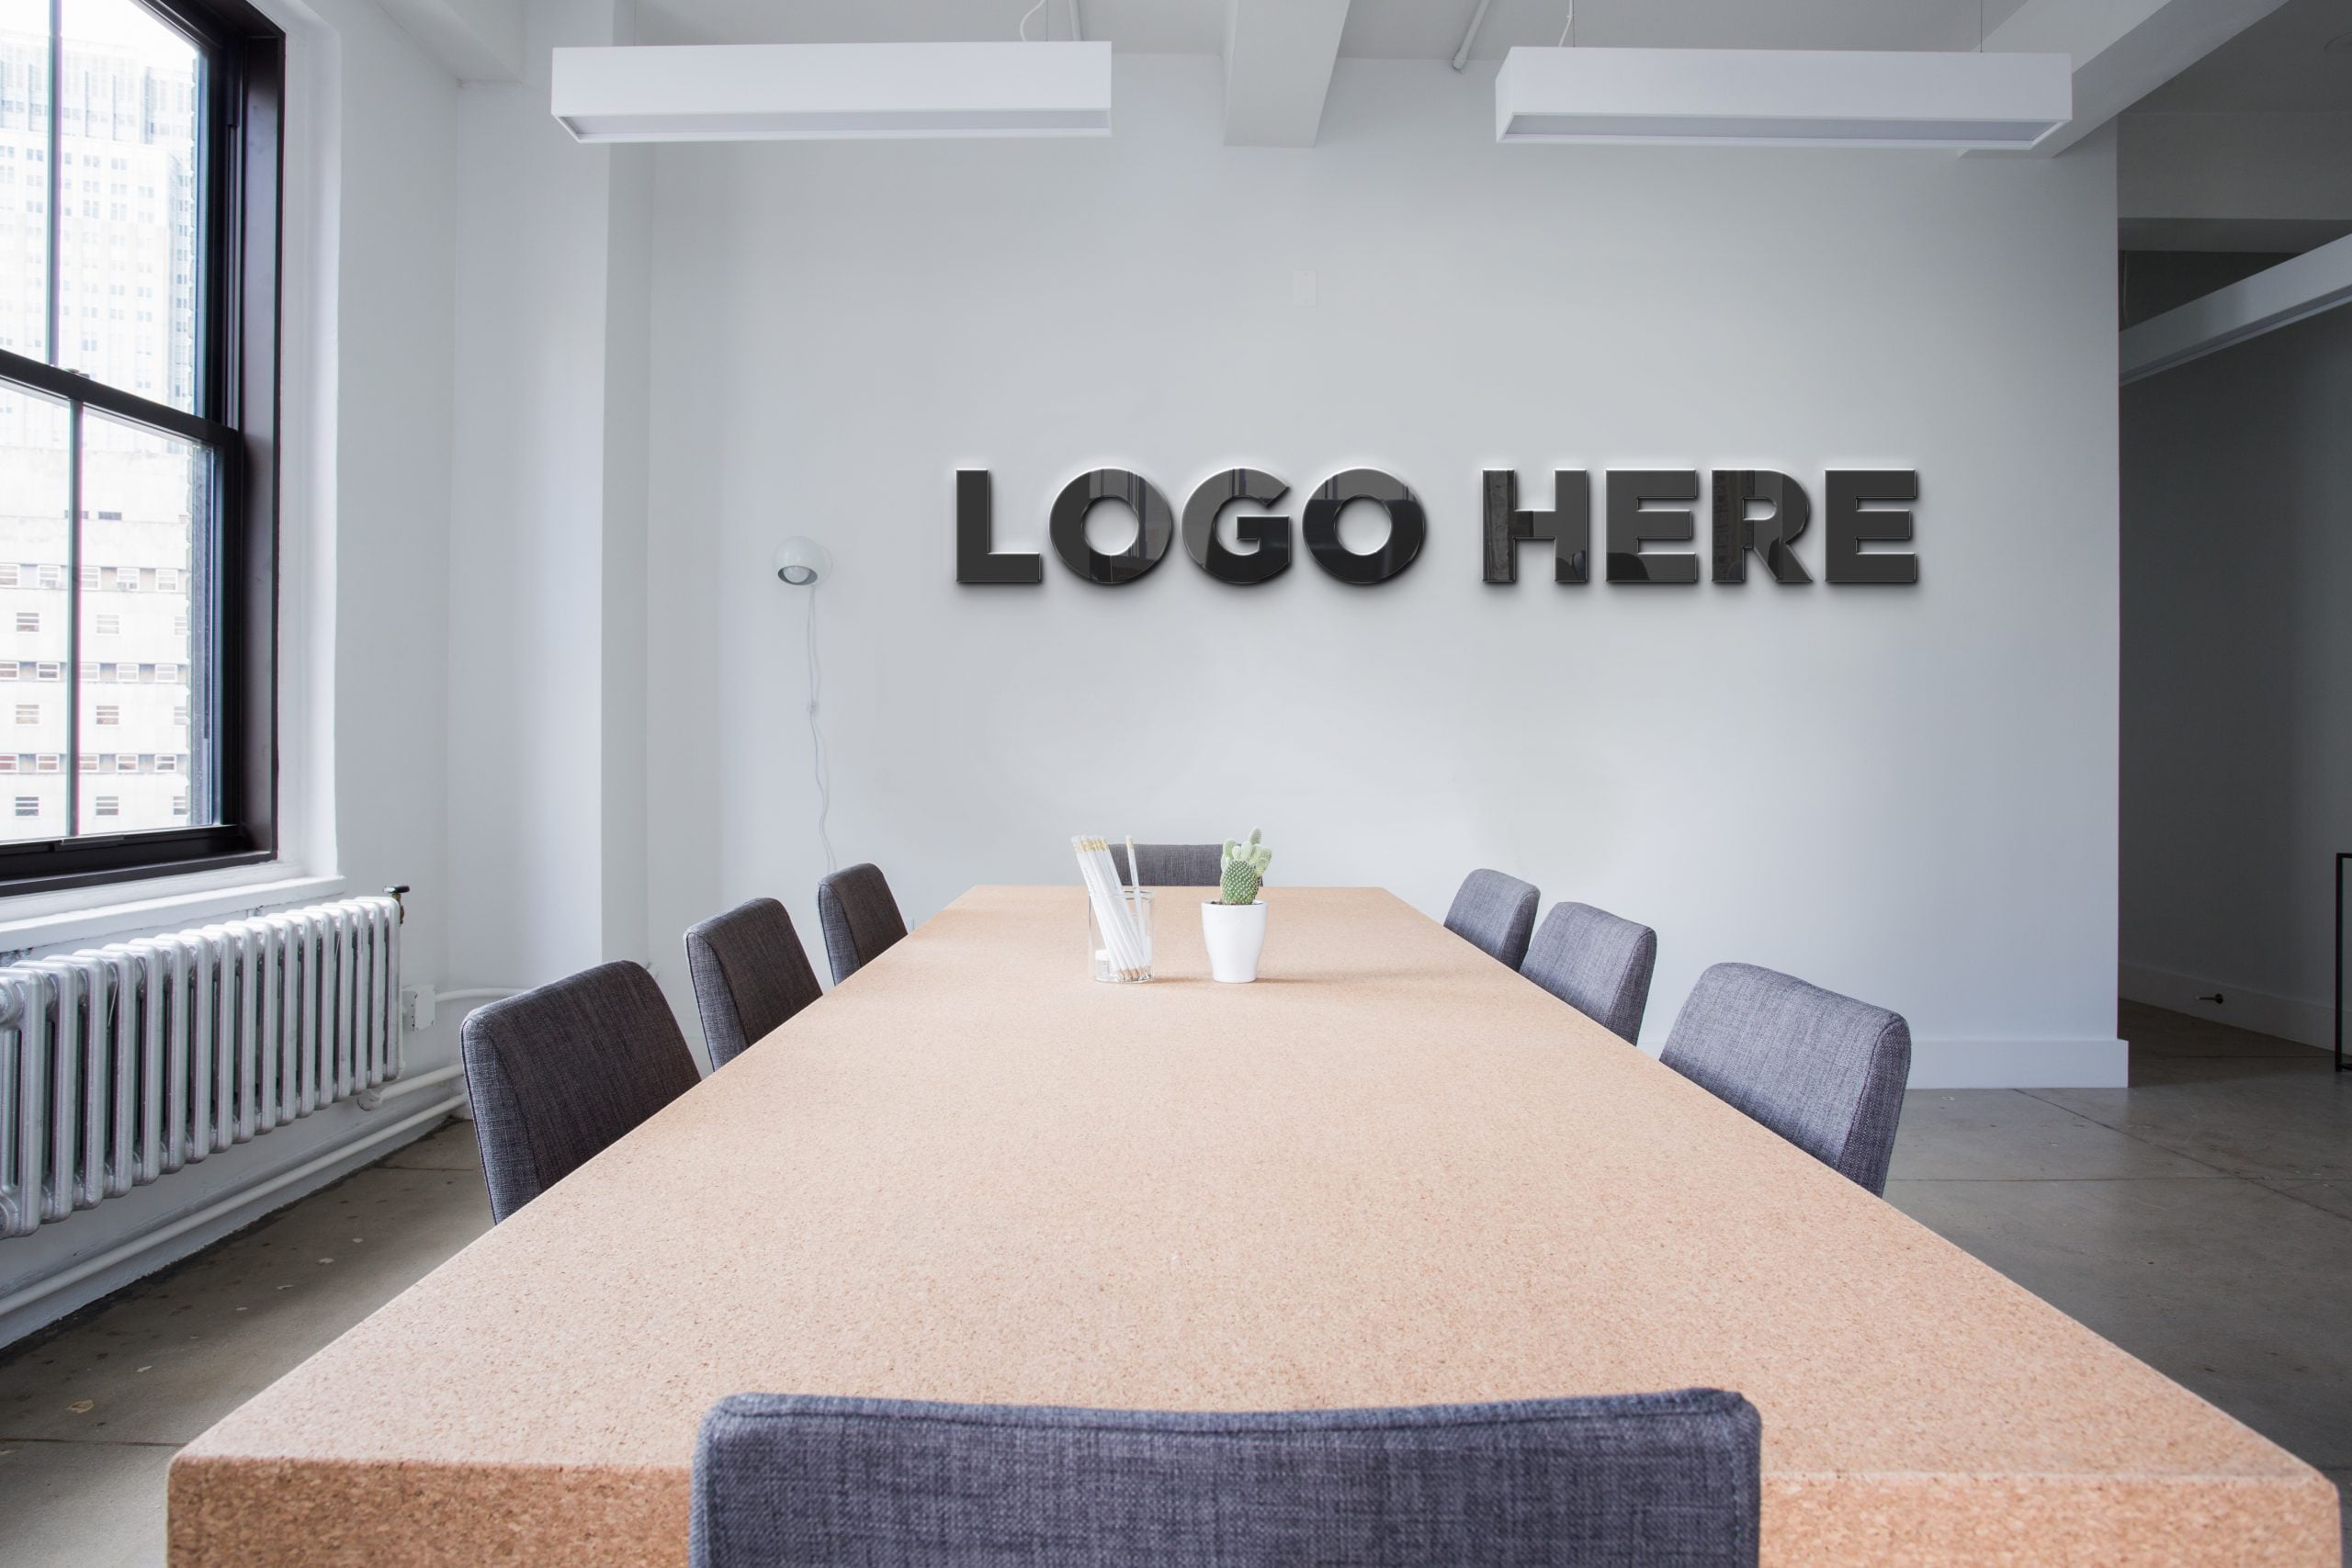 Conference-room-logo-mockup